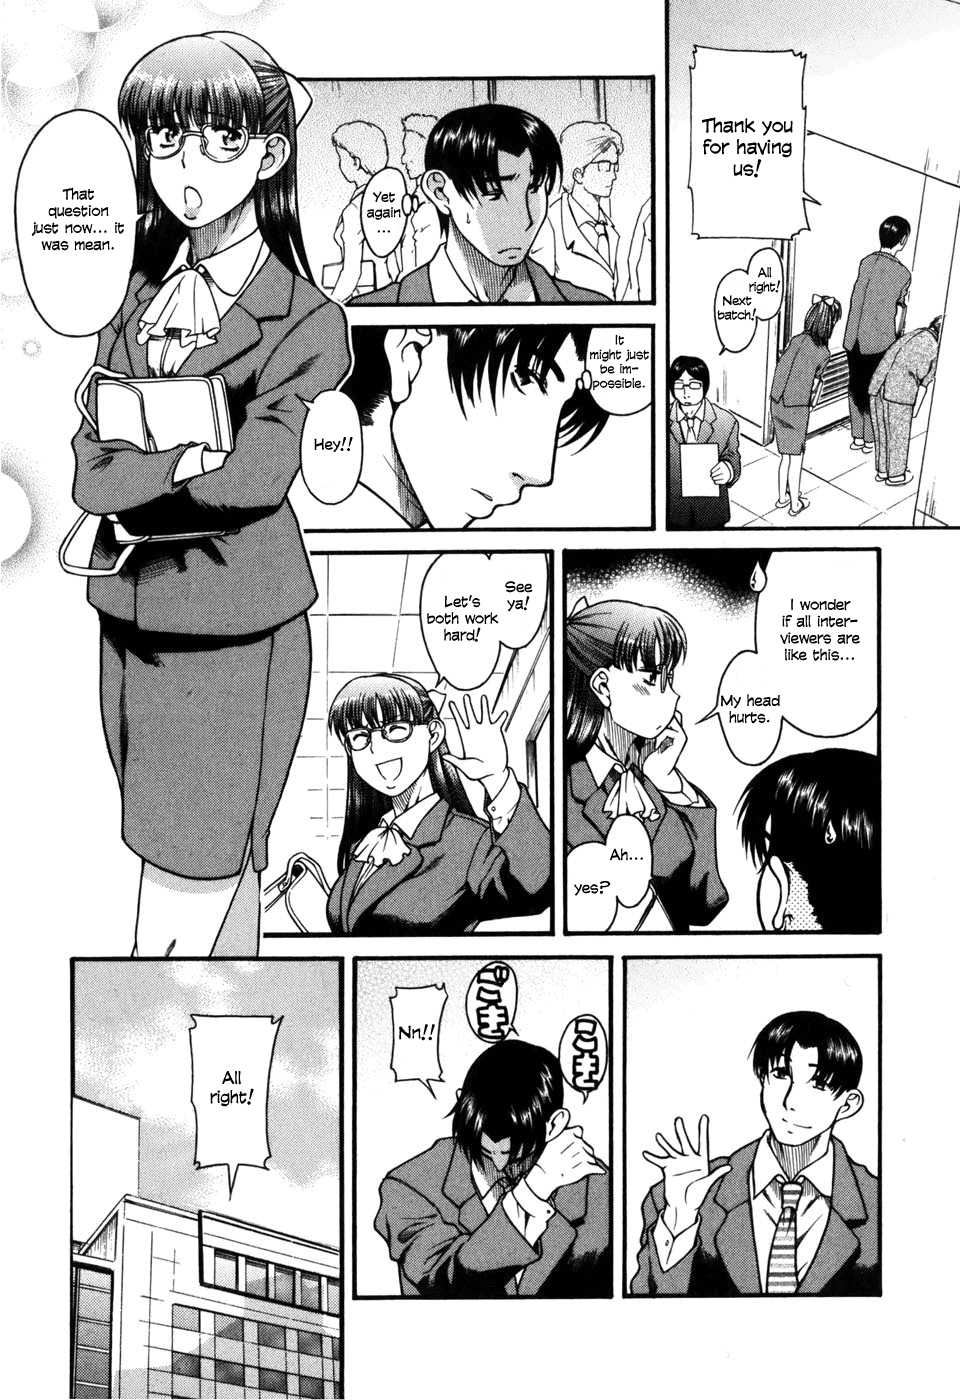 [Ryuta Amazume] Toshiue no Hito Vol.5 chapter 31 [English] 